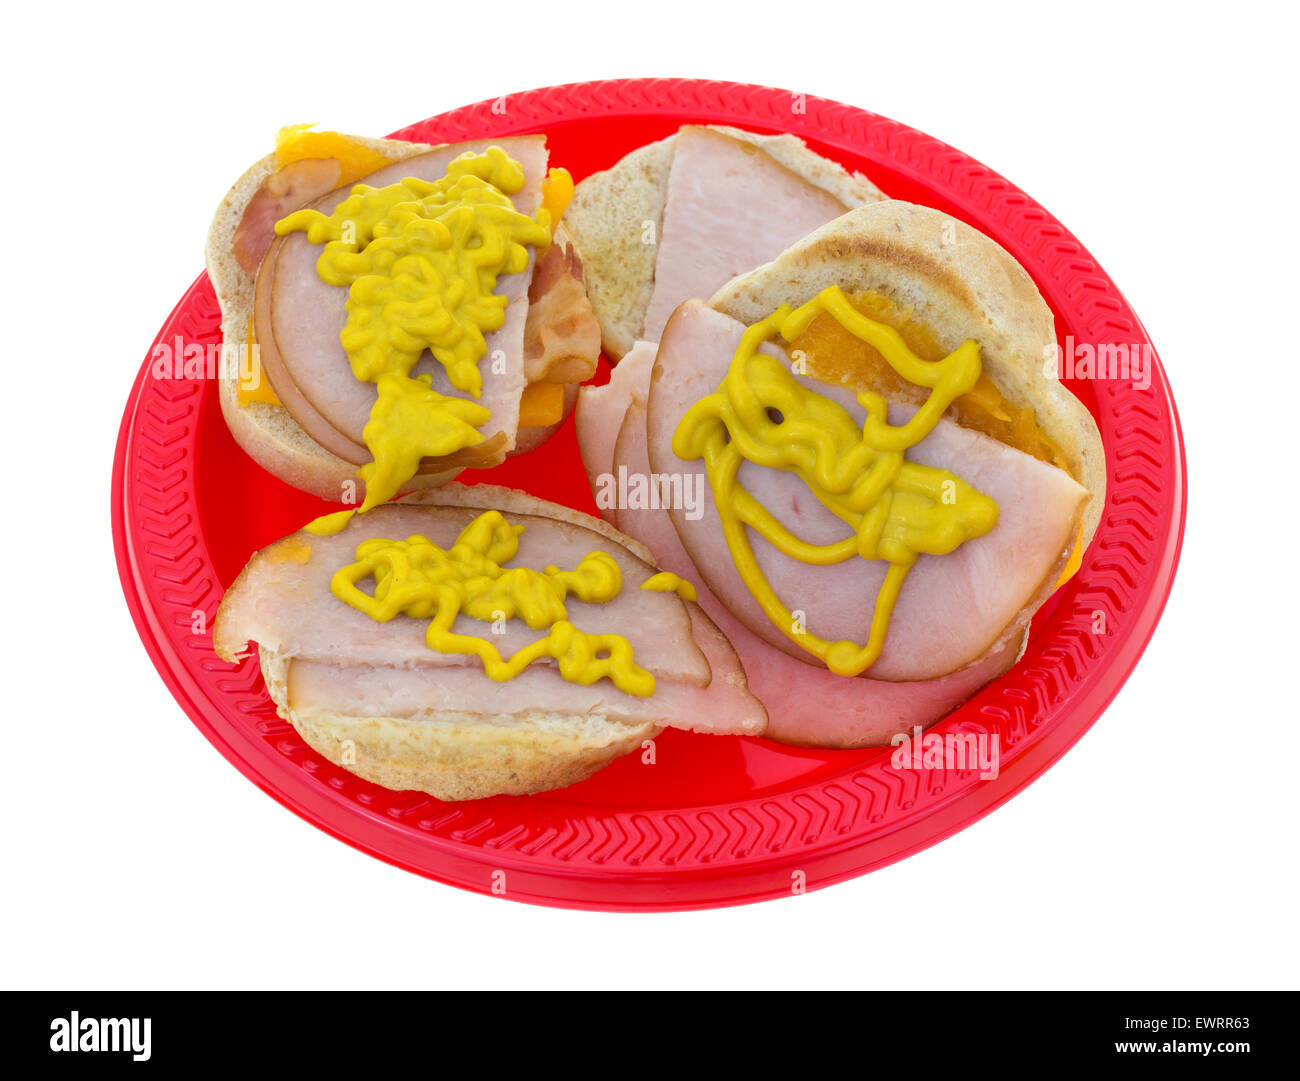 Zwei kleine Truthahn-Sandwiches mit Speck und Cheddar-Käse und Senf auf einem roten Picknick Teller. Stockfoto